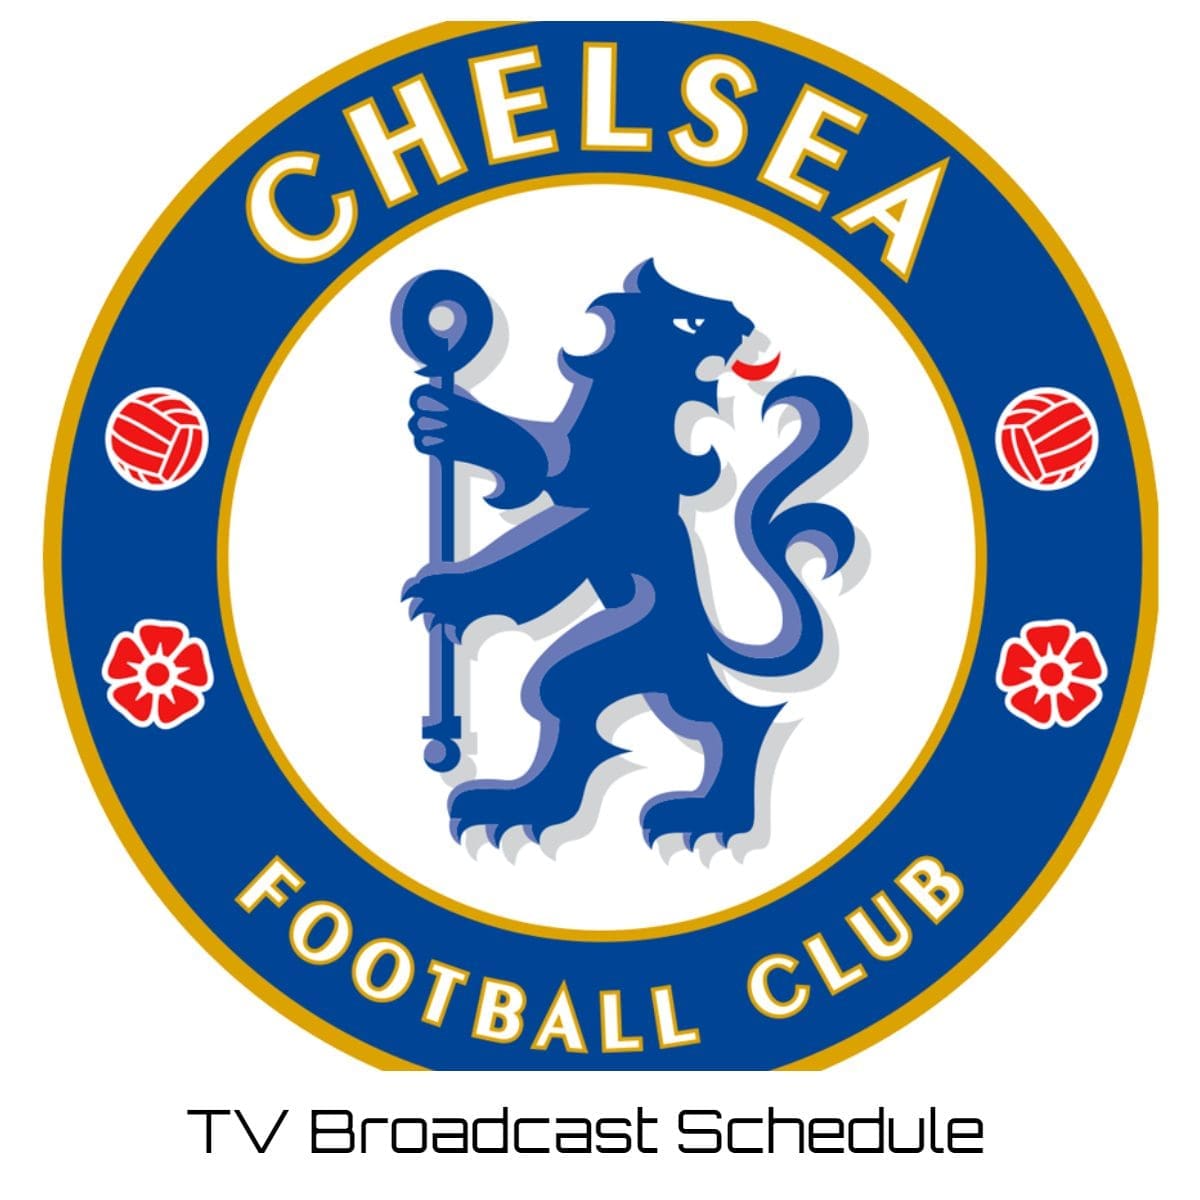 Chelsea TV Broadcast Schedule